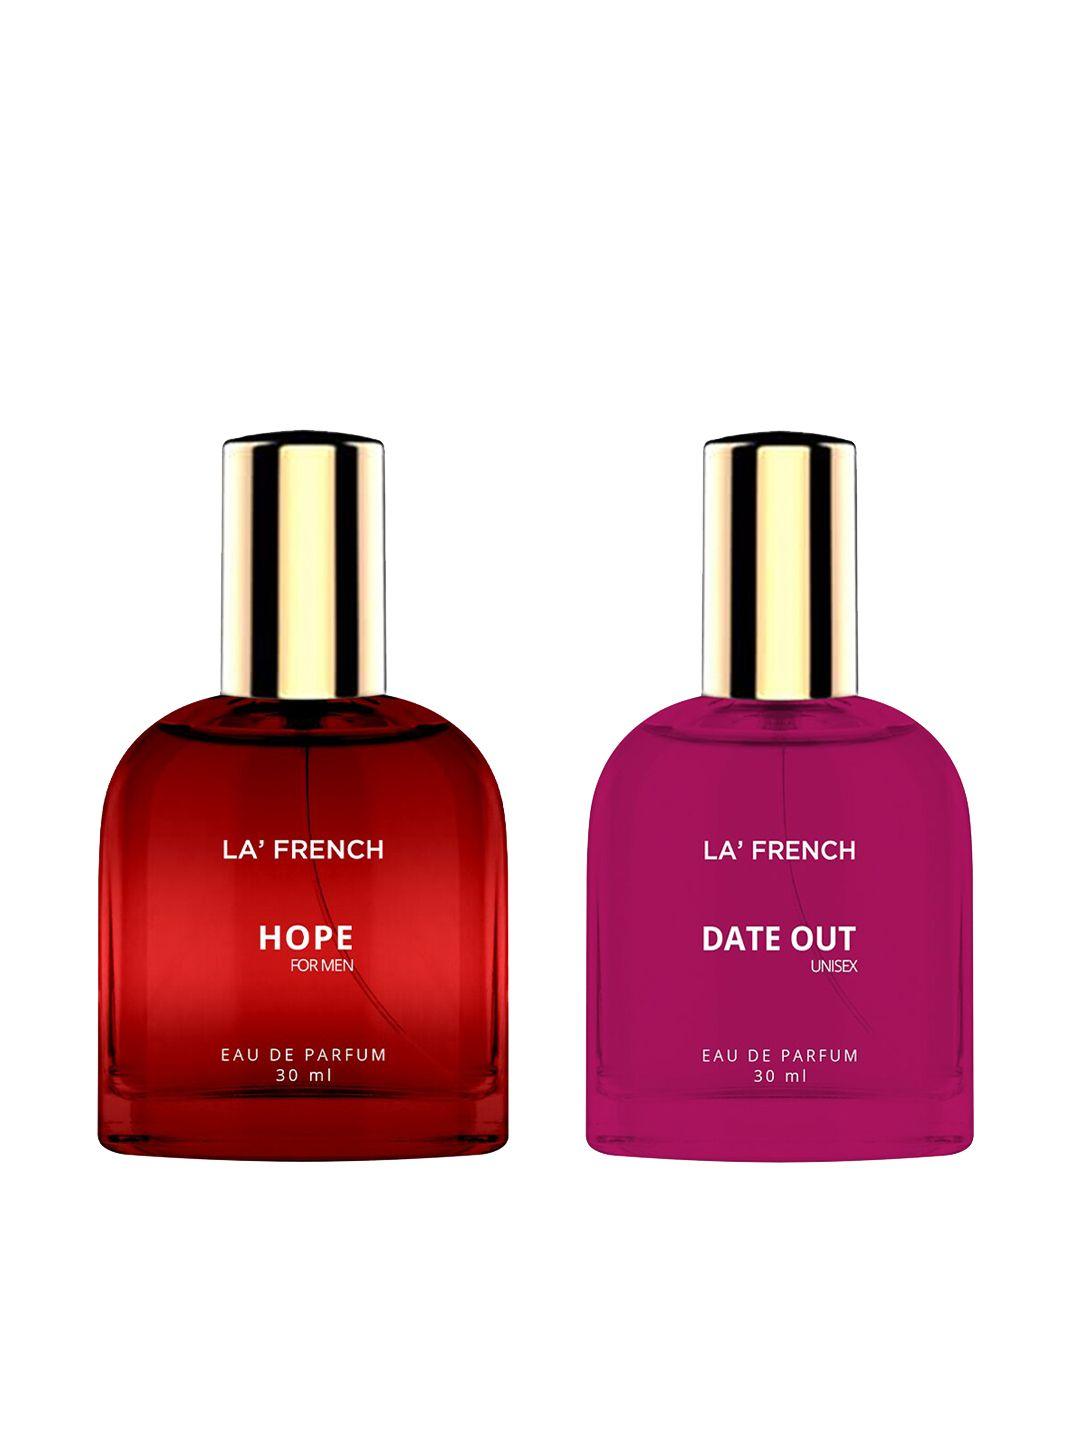 la french 2-pcs hope & date out long lasting eau de parfum - 30ml each